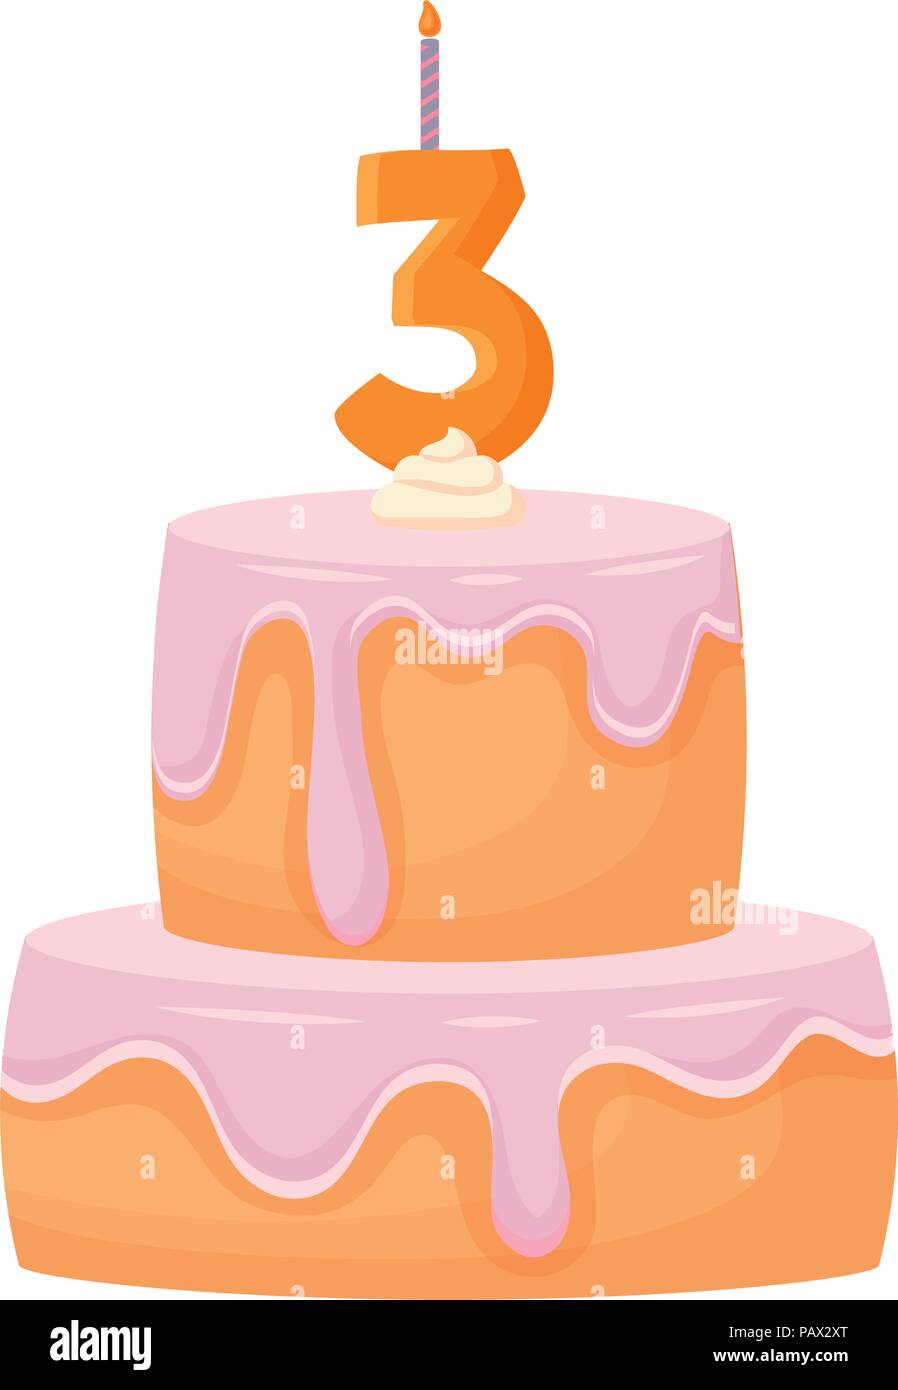 Gâteau D'anniversaire Avec La Bougie Numéro 25 Image stock - Image du  gâteau, décoration: 46391375